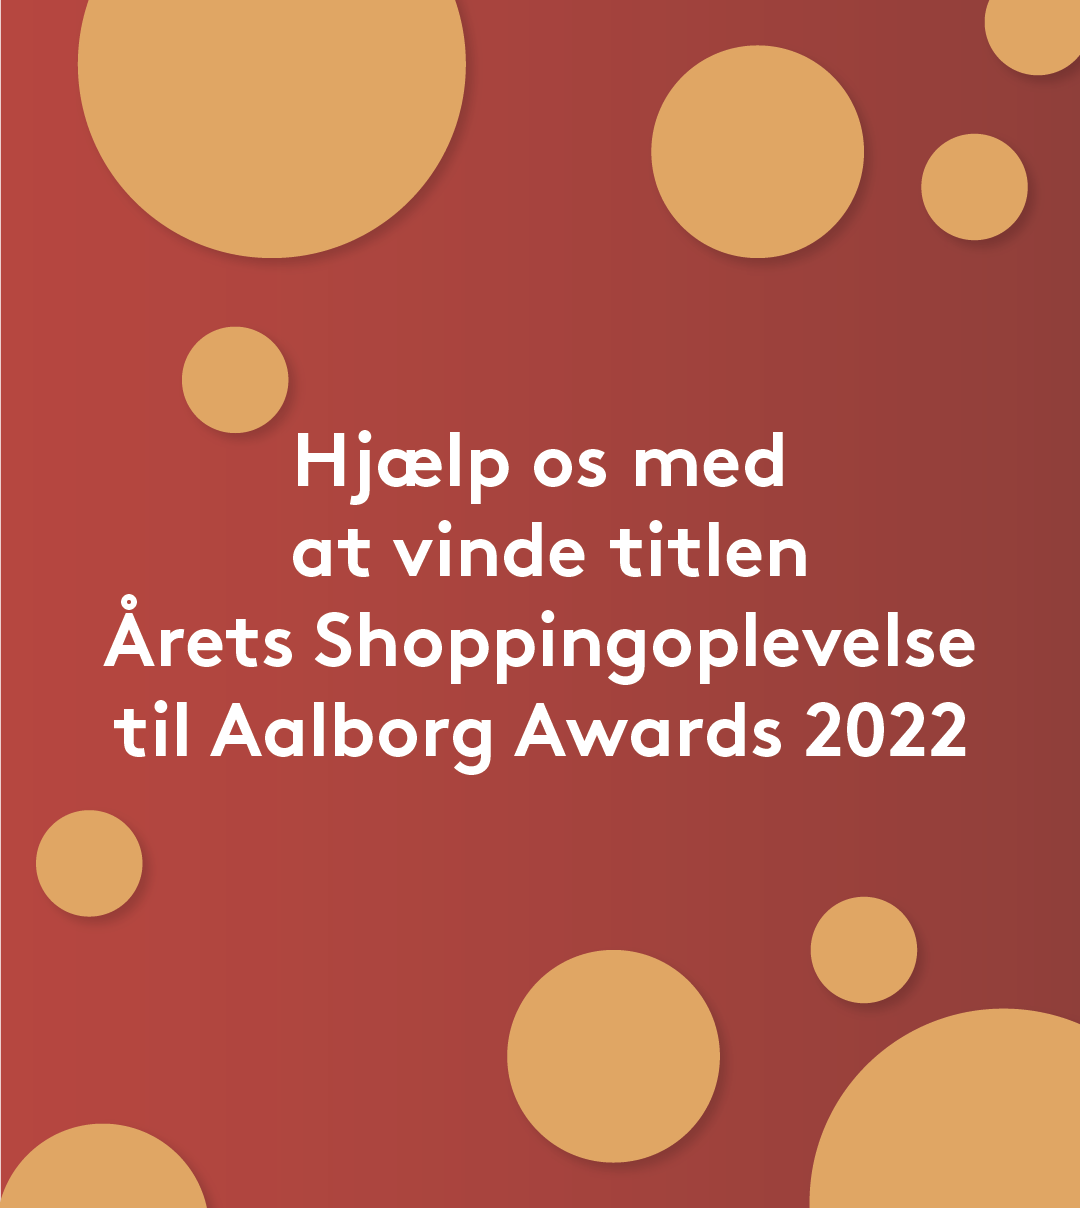 Stem på Friis Shoppingcenter til dette års Aalborg Awards